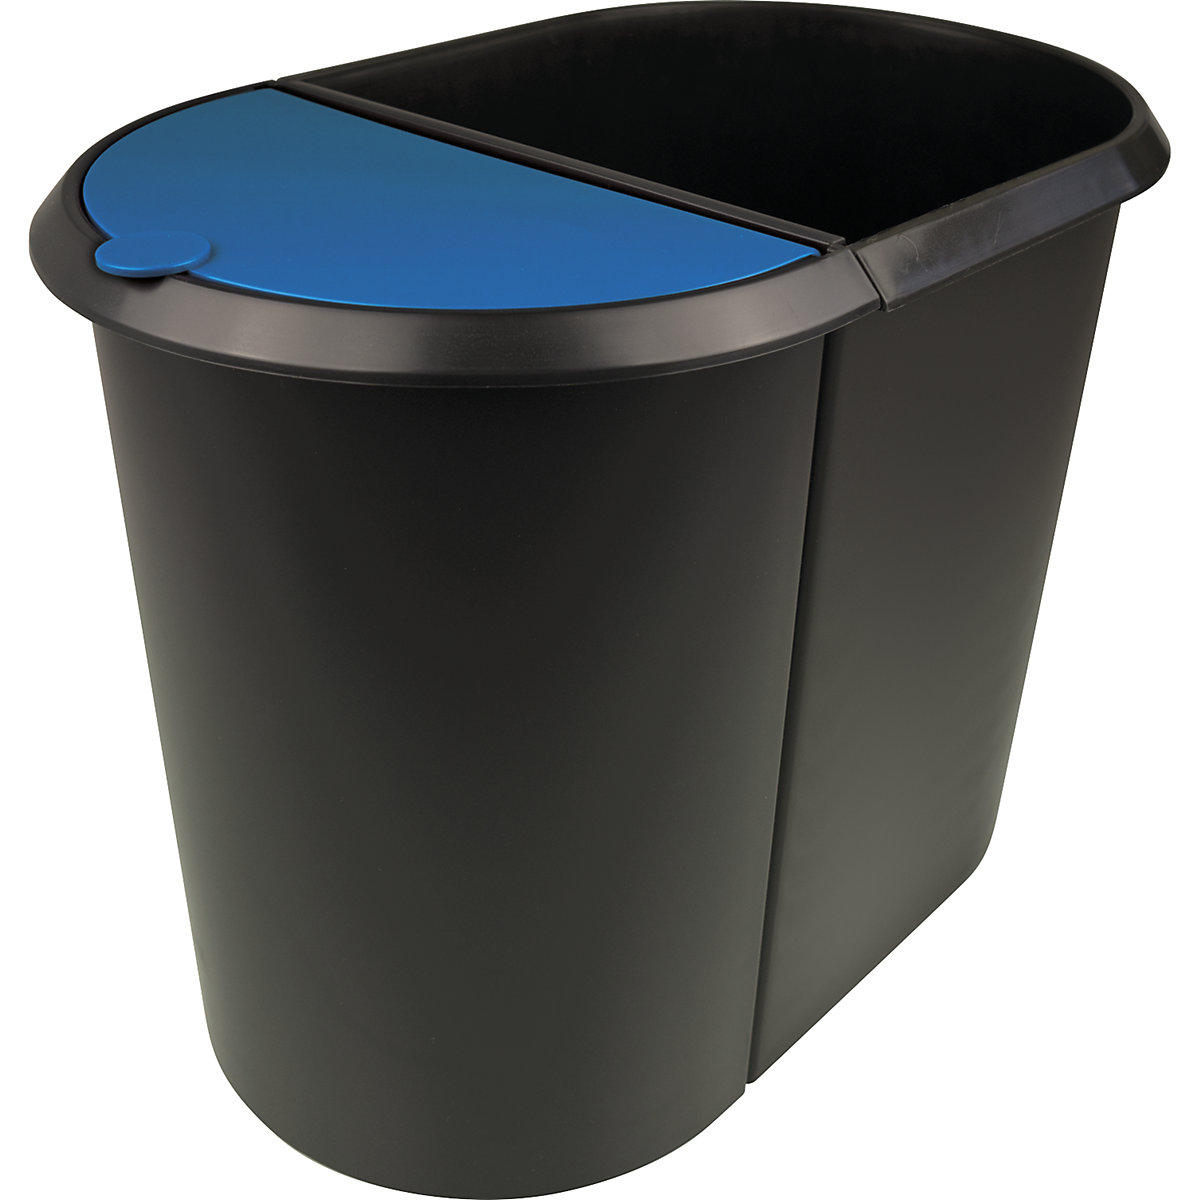 Waste bin system – helit